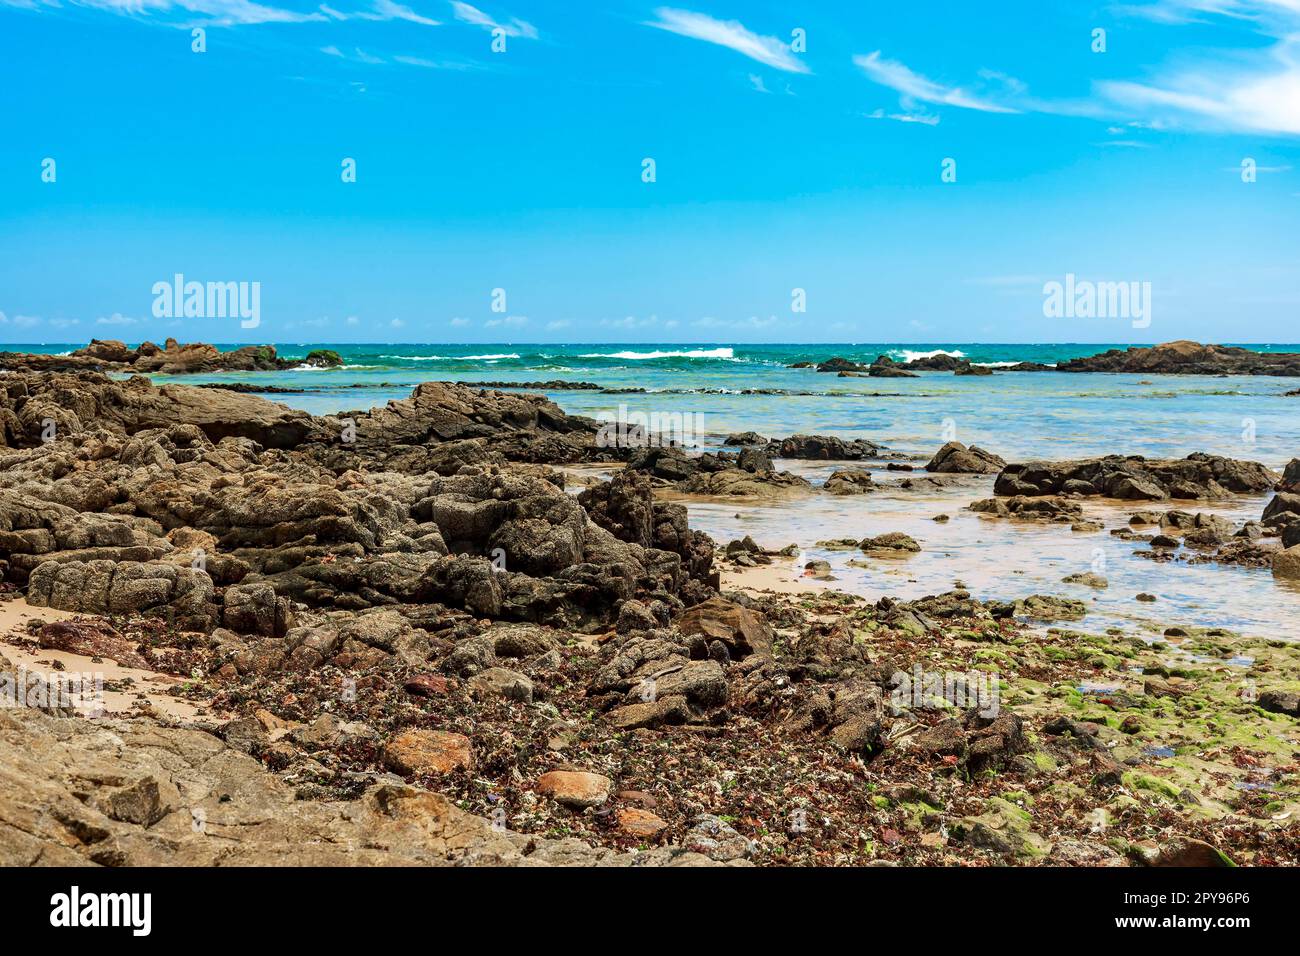 Zona rocciosa con piscine naturali, alghe e barriere coralline alla spiaggia di Itapoa nella città di Salvador a Bahia, Brasile Foto Stock